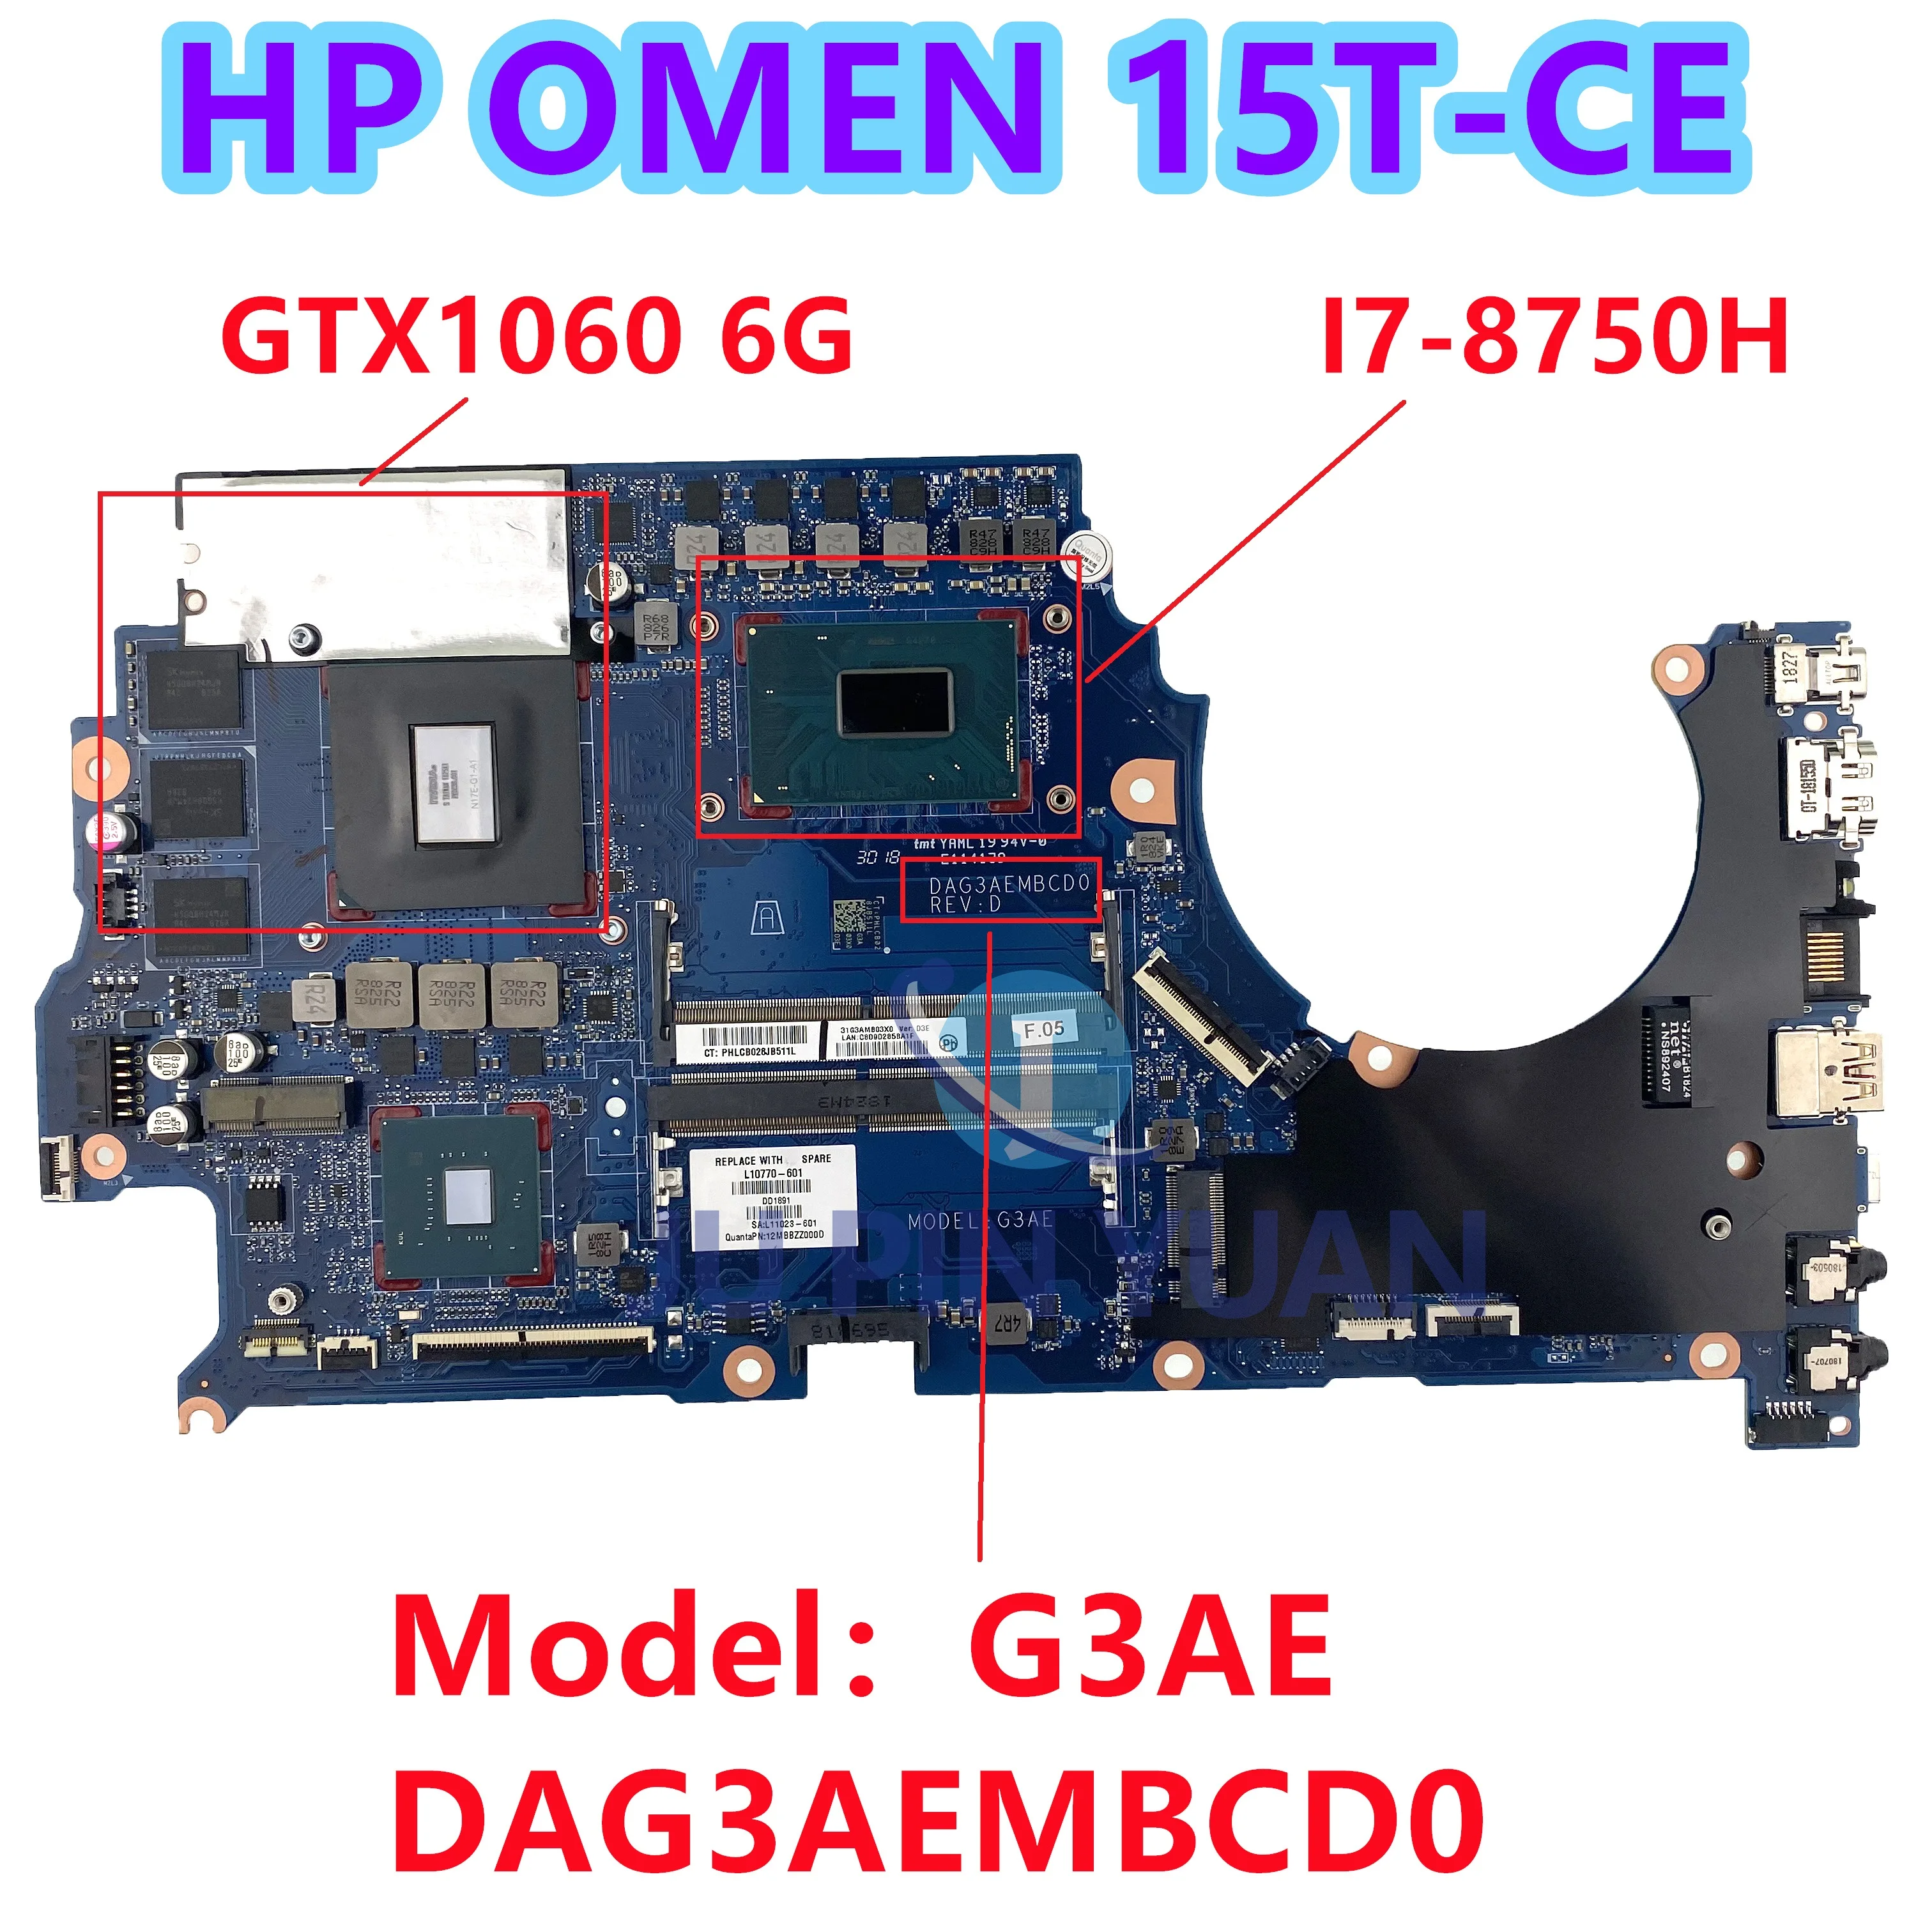 

JUPINYUAN For HP OMEN 15T-CE100 15-CE198WM 15-CE Laptop Motherboard L10770-601 L10770-001 DAG3AEMBCD0 GTX1060/6GB W i7-8750H CPU